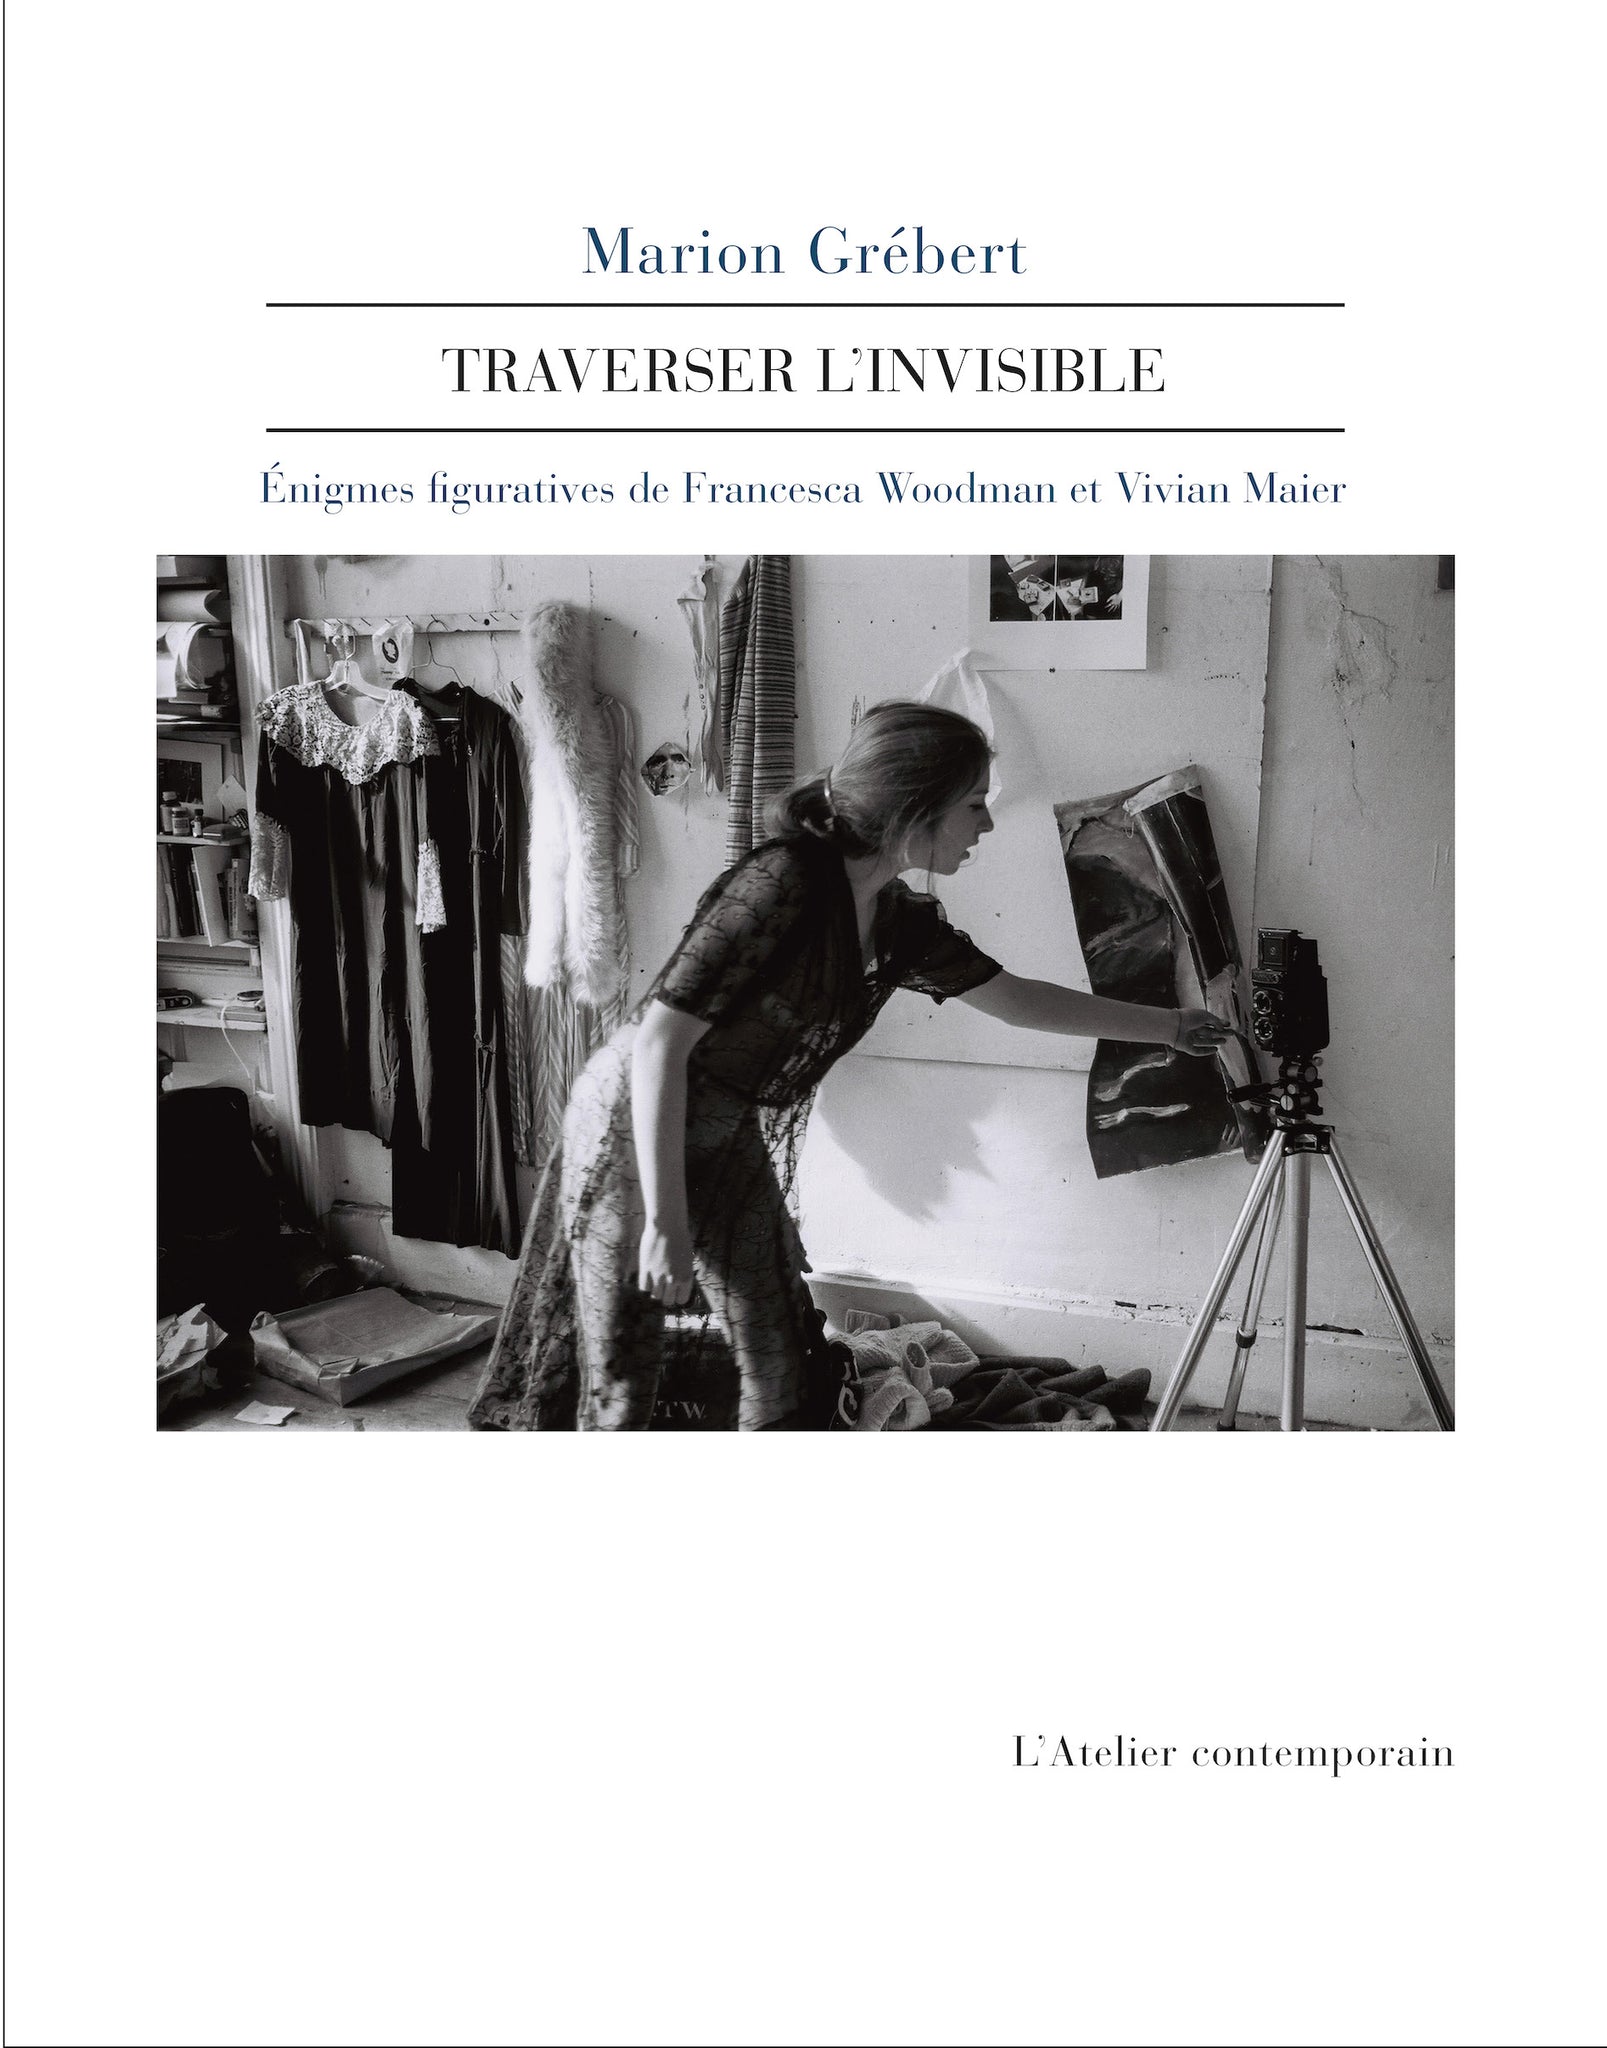 Traverser l'invisible. Enigmes figuratives de Francesca Woodman et Vivian Maier.